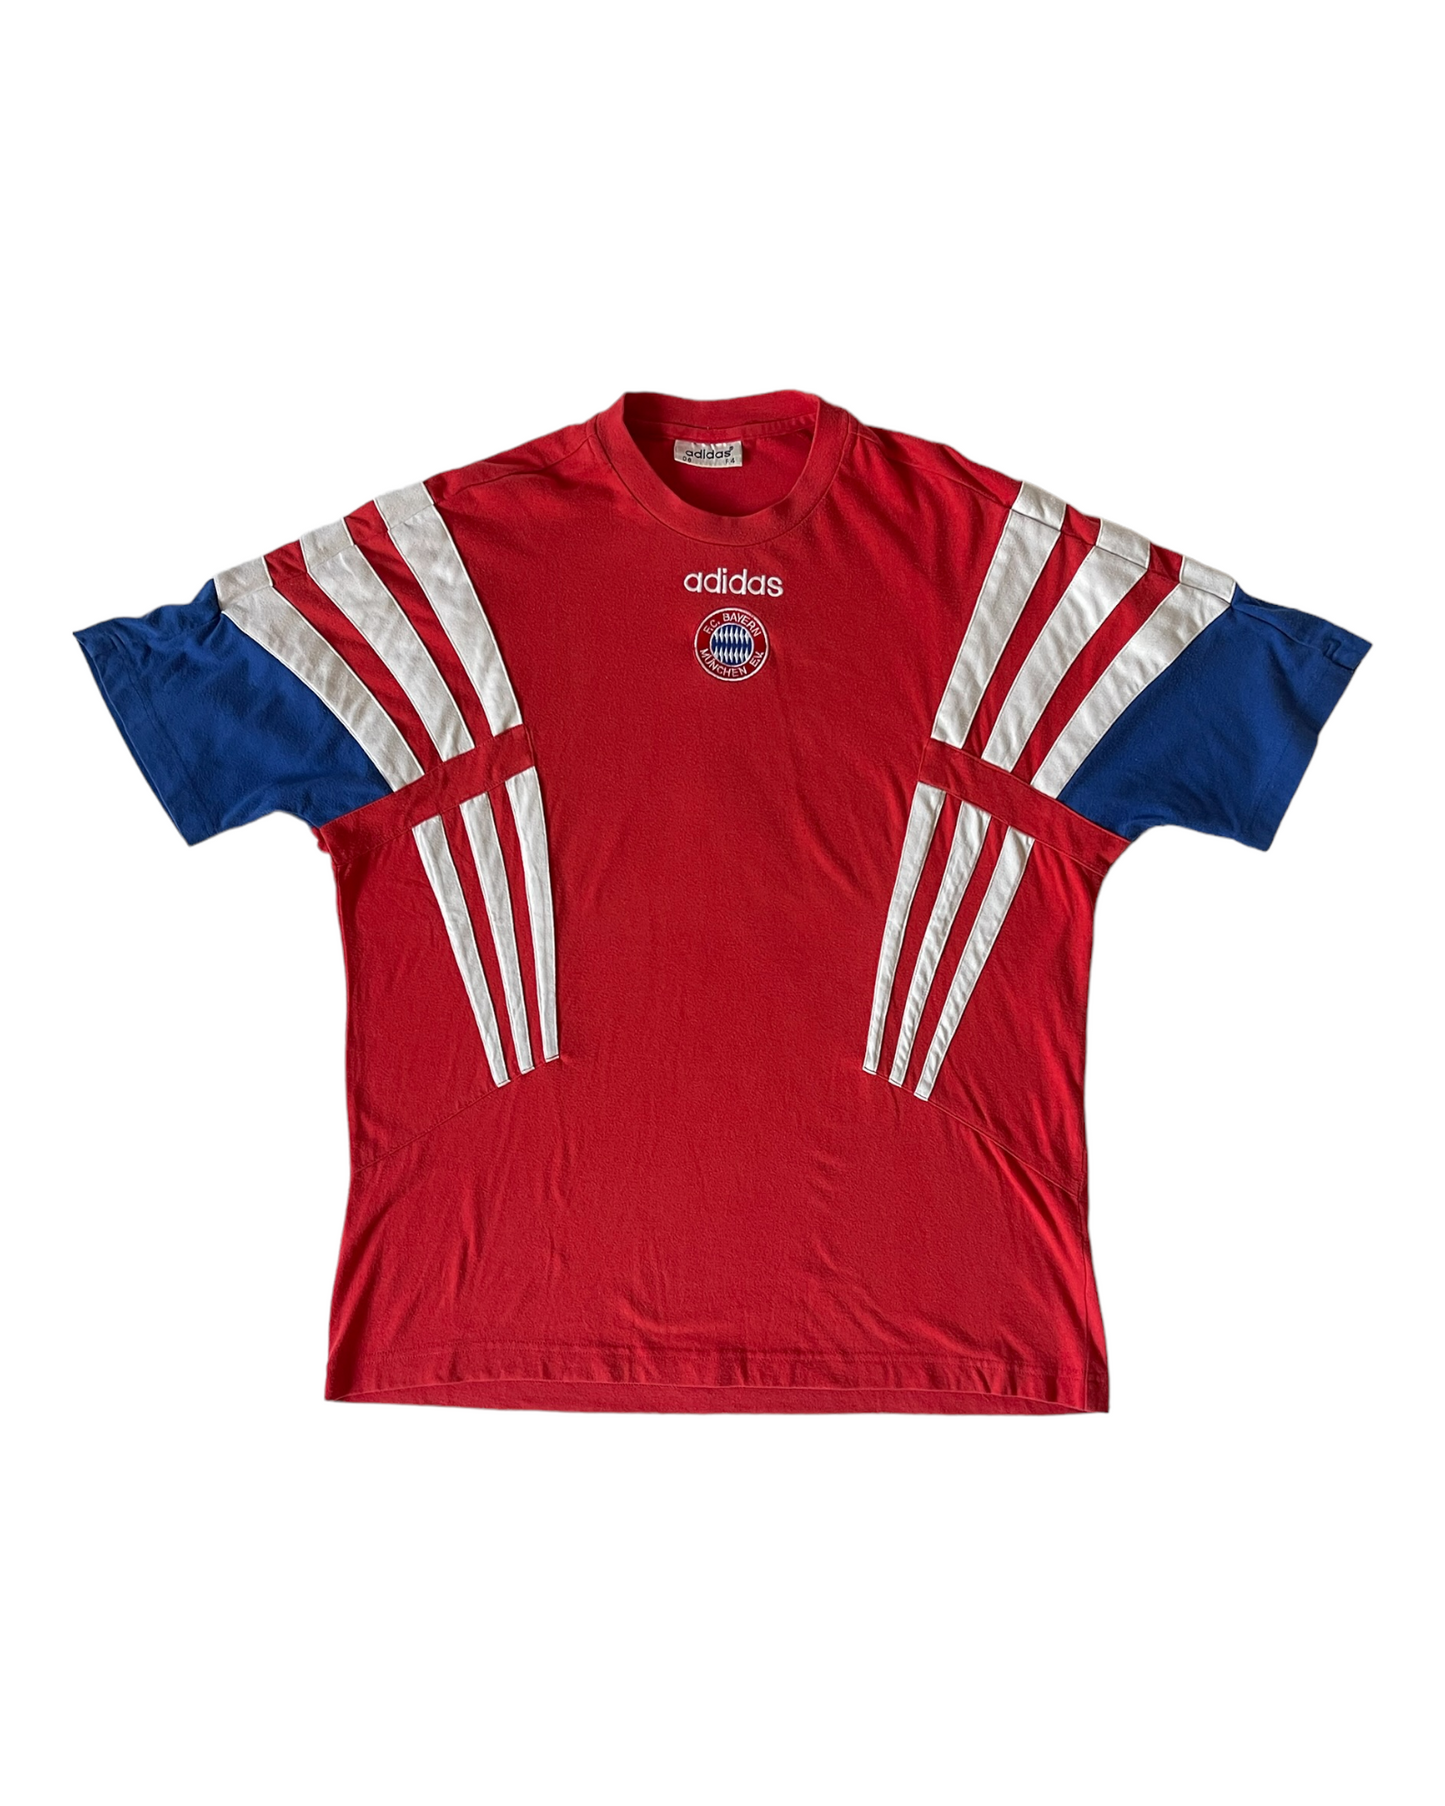 Bayern München Munich Adidas 1995 1996 1997 1998 Training Shirt / Jersey / Leisure T-Shirt Football Size XL